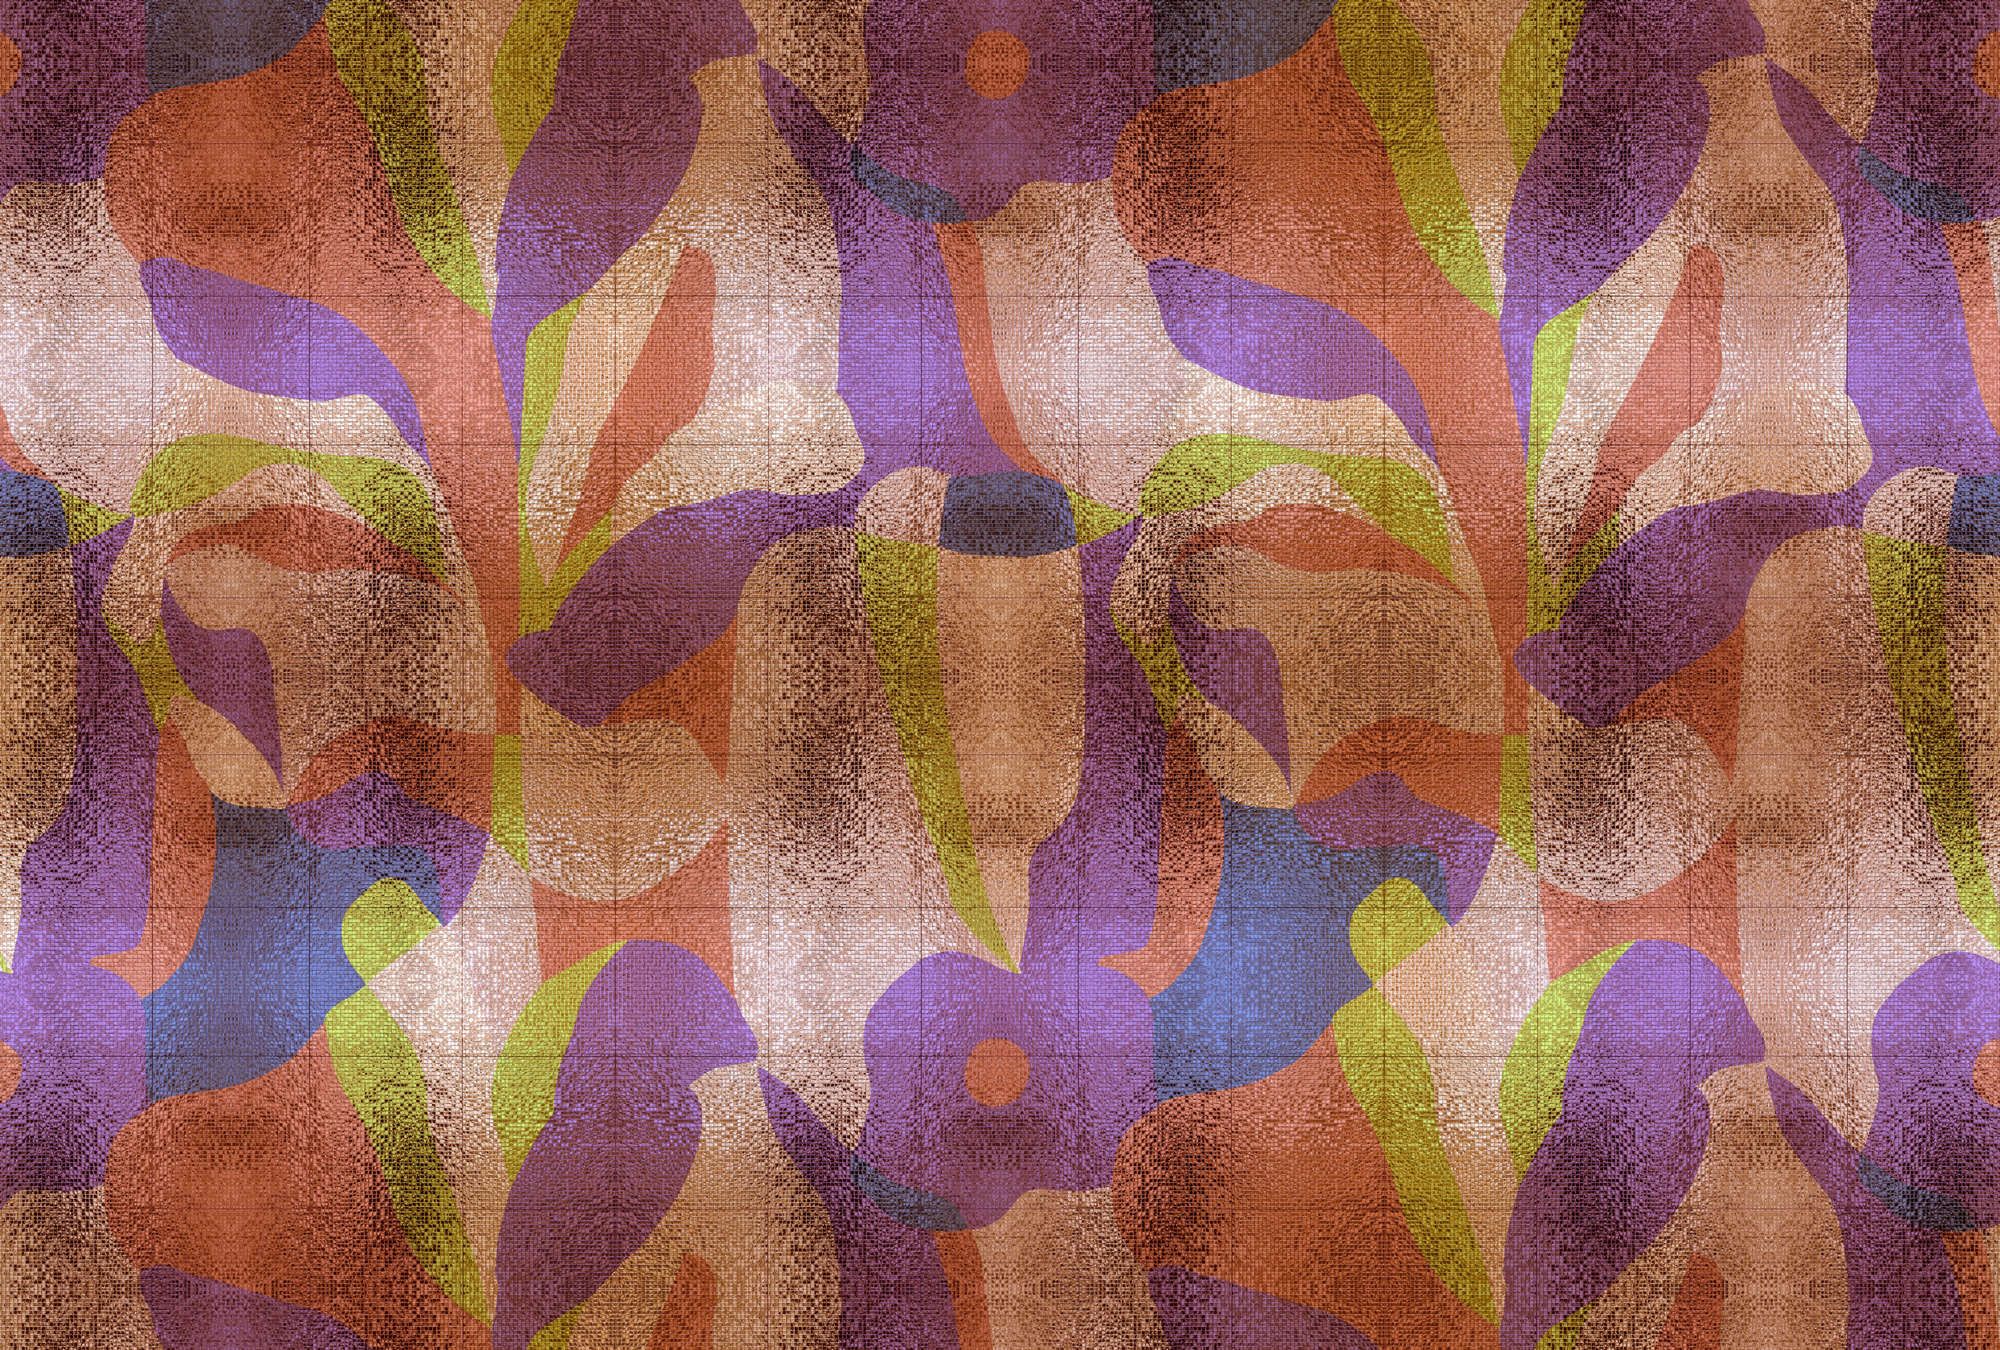             Fotomural »brillanaza« - Diseño gráfico de hojas de colores con estructura de mosaico - Material sin tejer liso, ligeramente nacarado
        